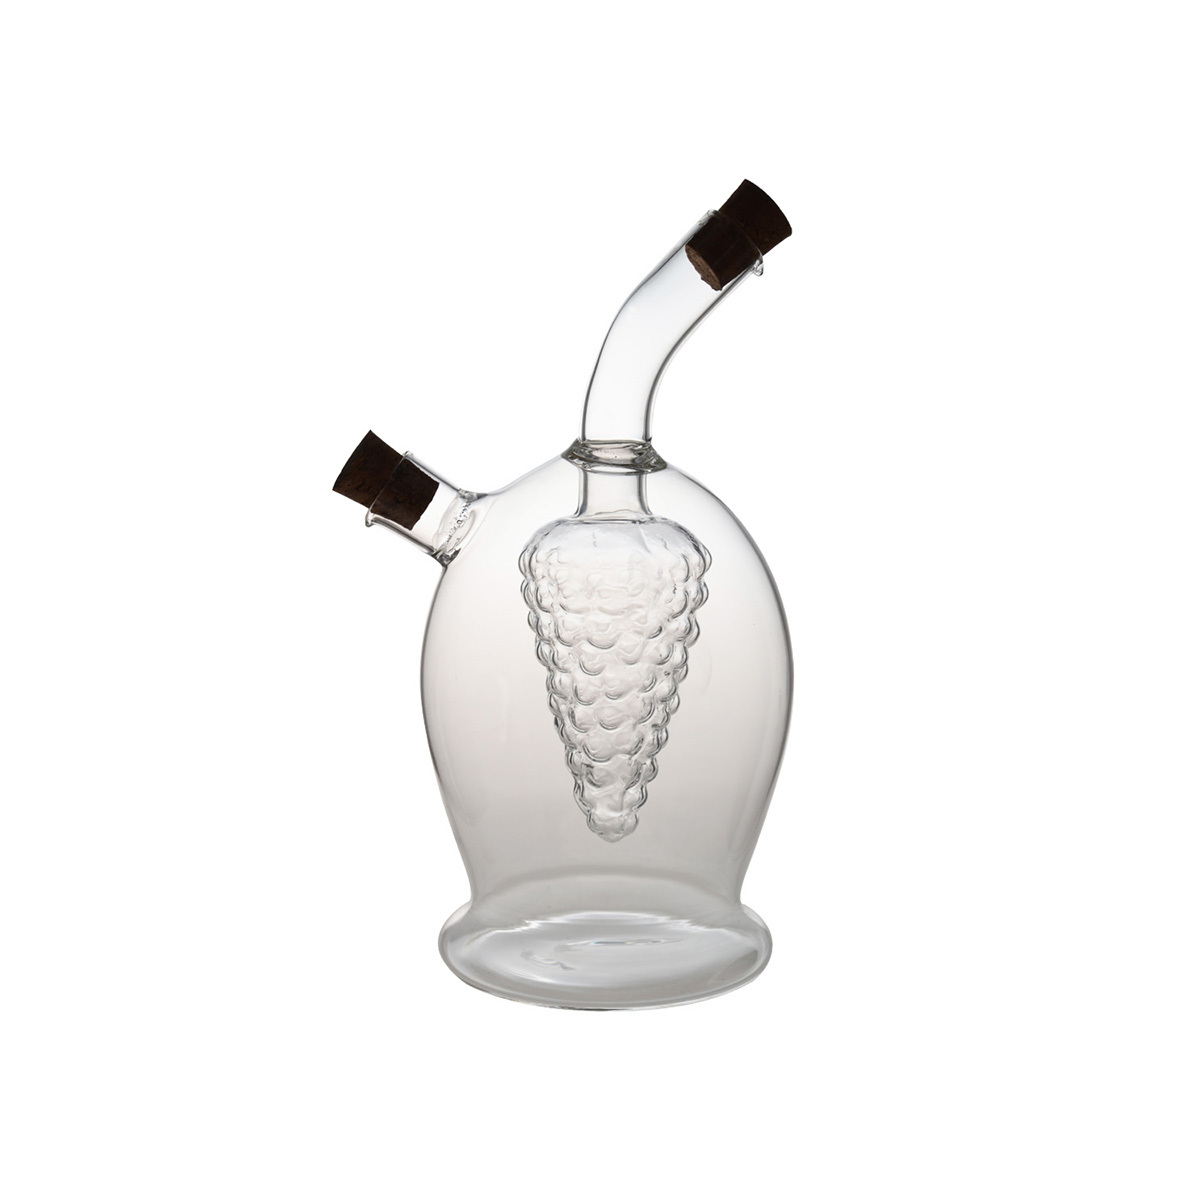 HY1305 100/300ML 2 in 1 Grape Design Borosilicate Glass Oil & Vinegar Bottle